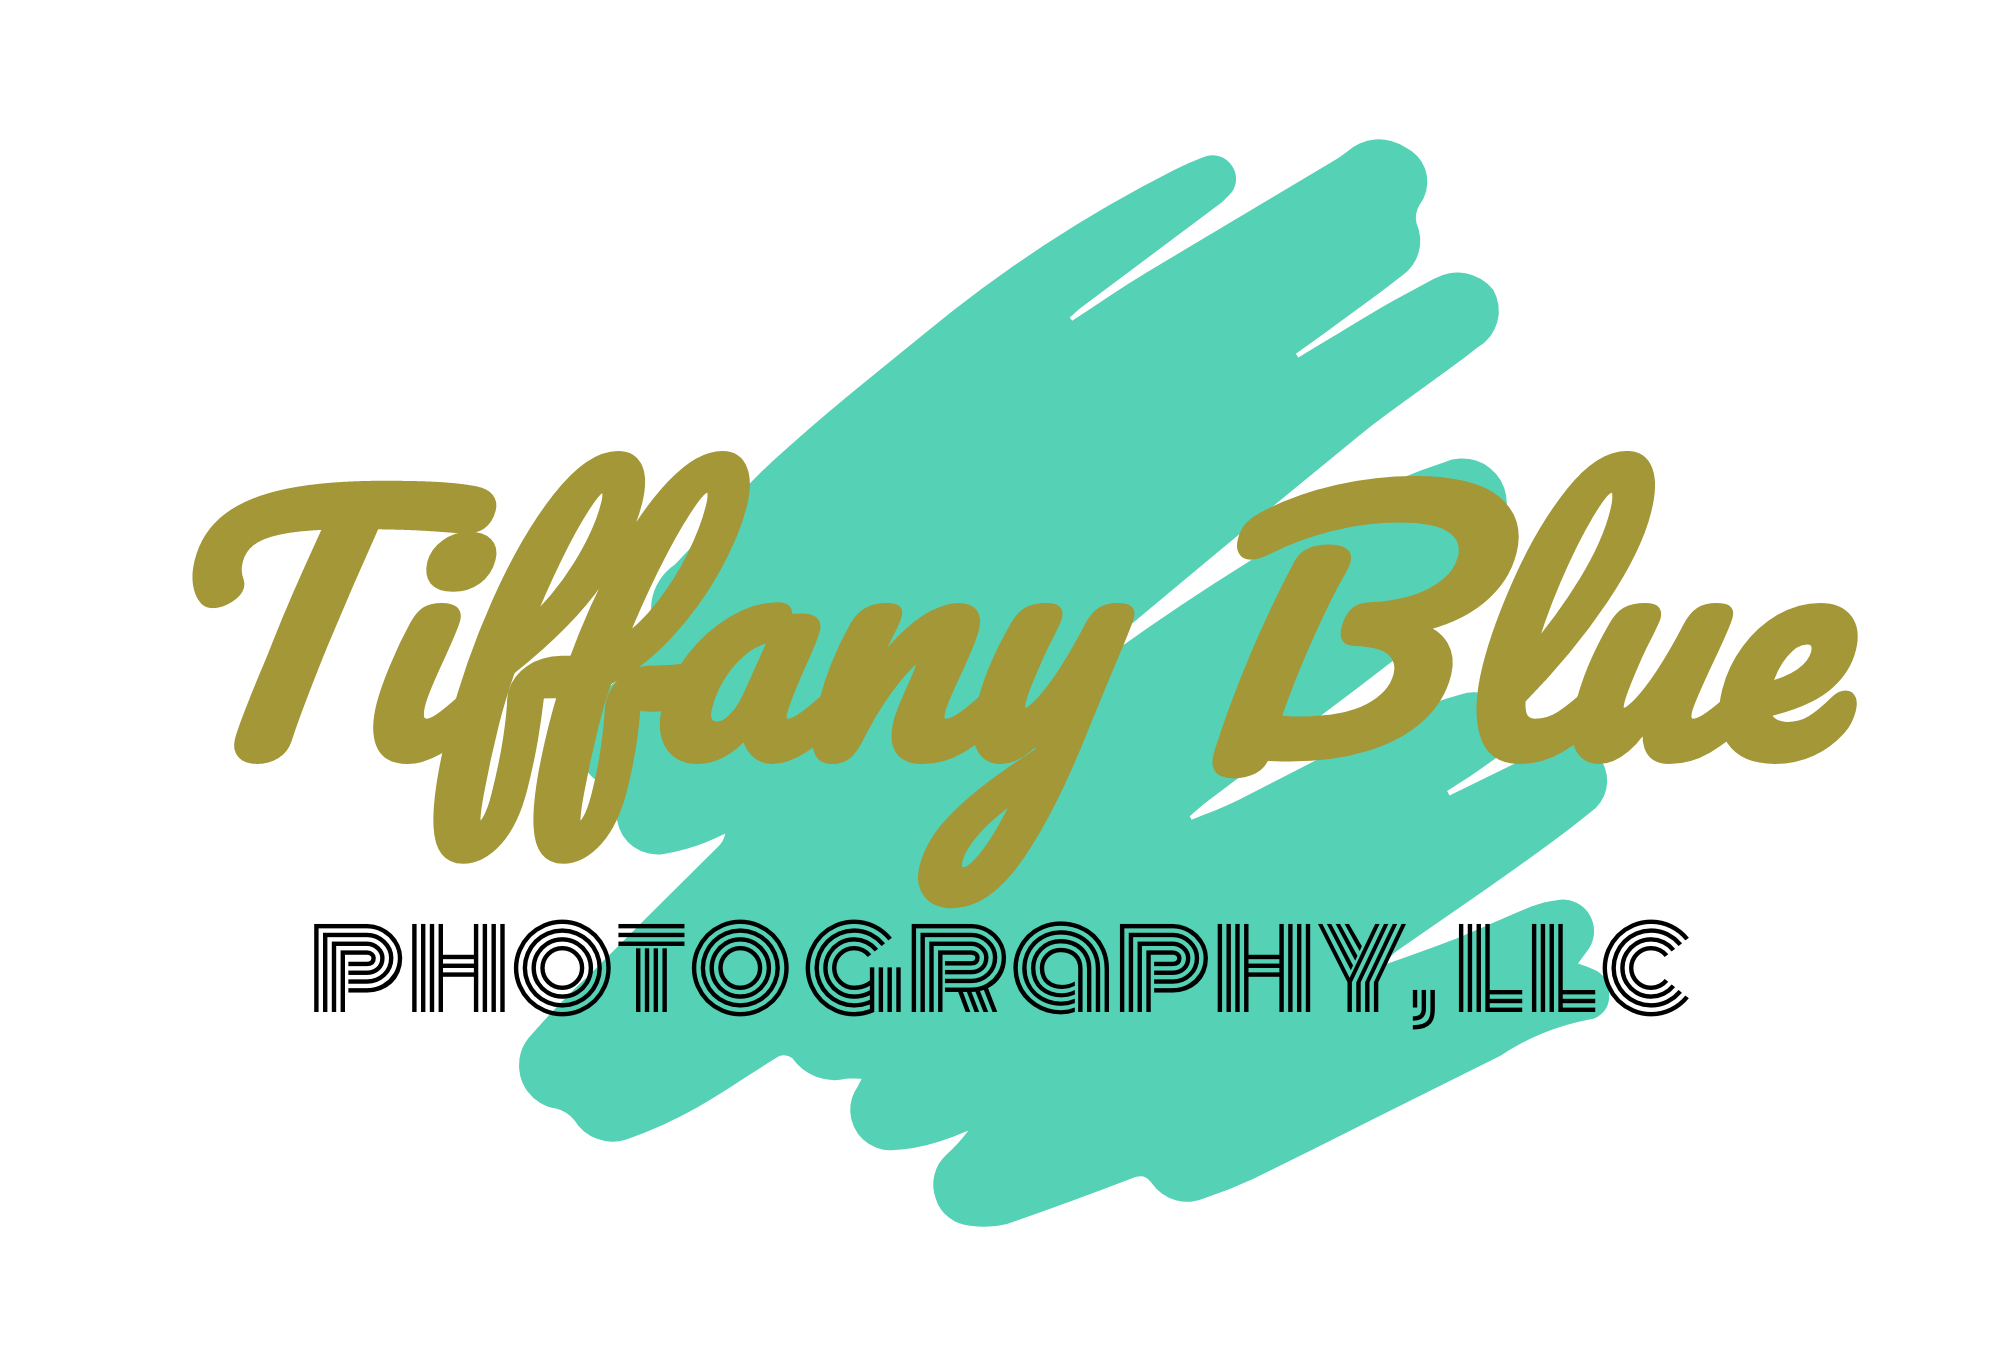 Tiffany Blue Photography